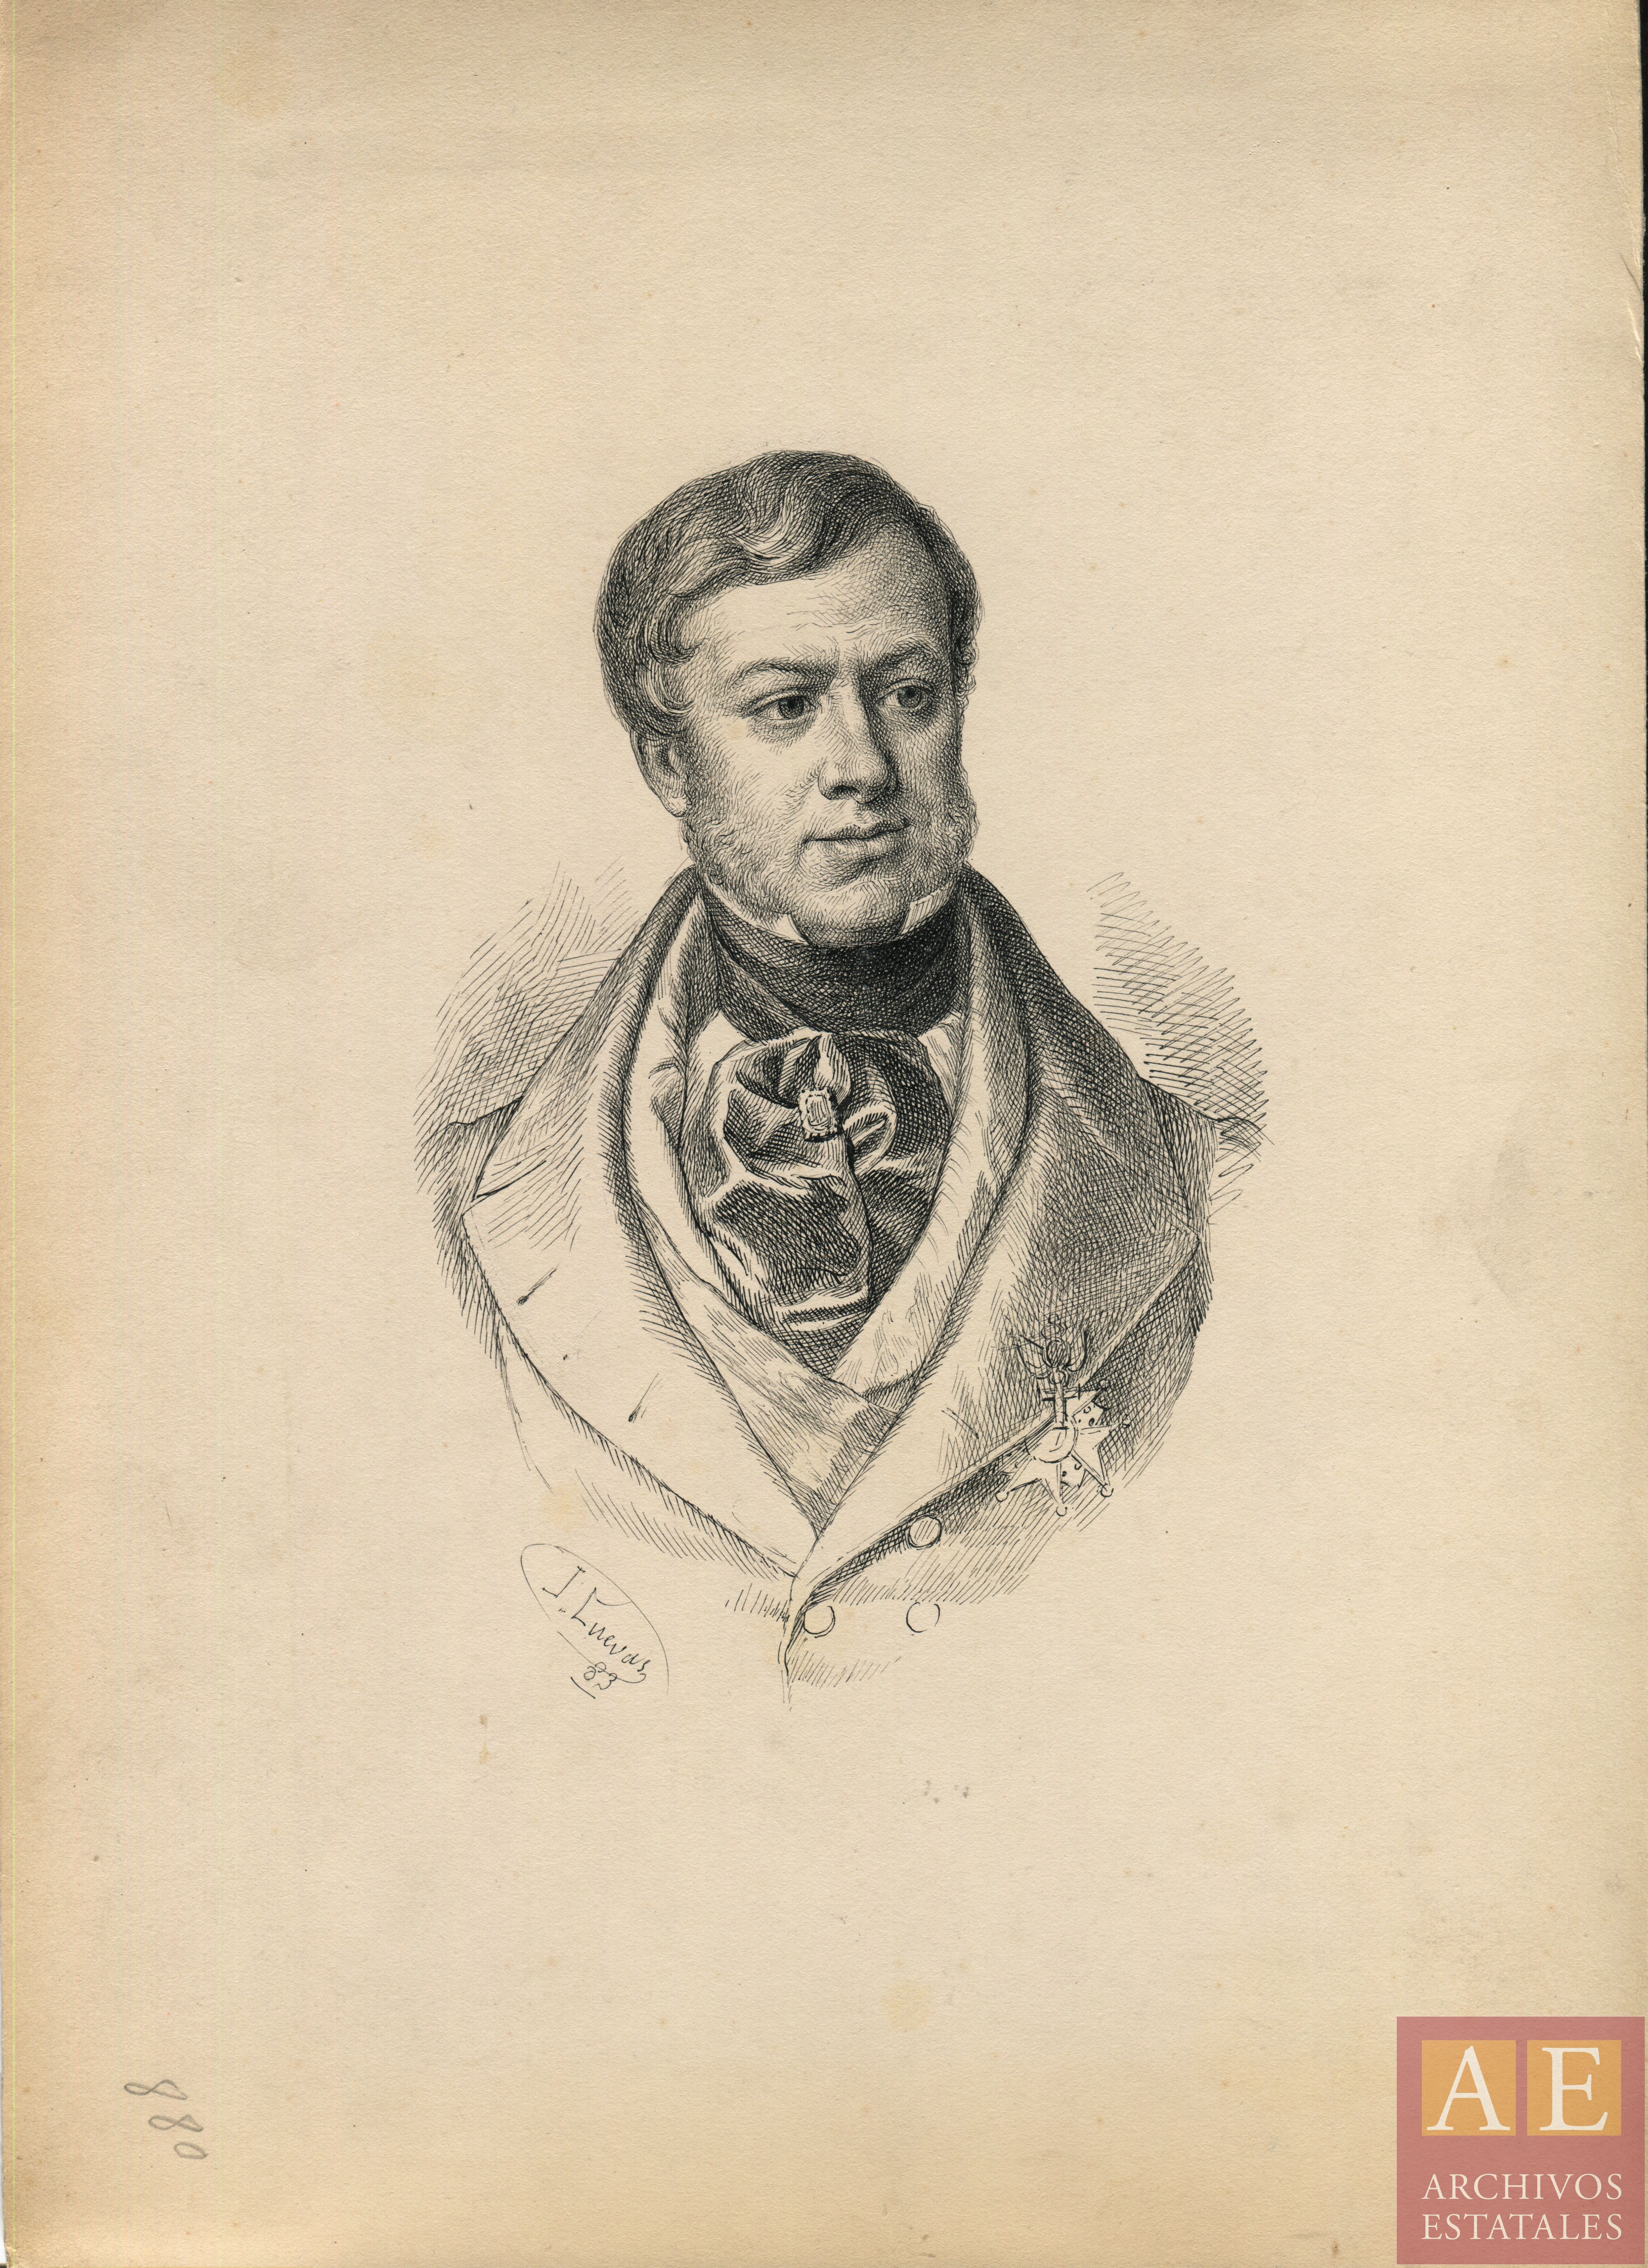 Queipo de Llano Ruiz de Saravia, José María (1786-1843)